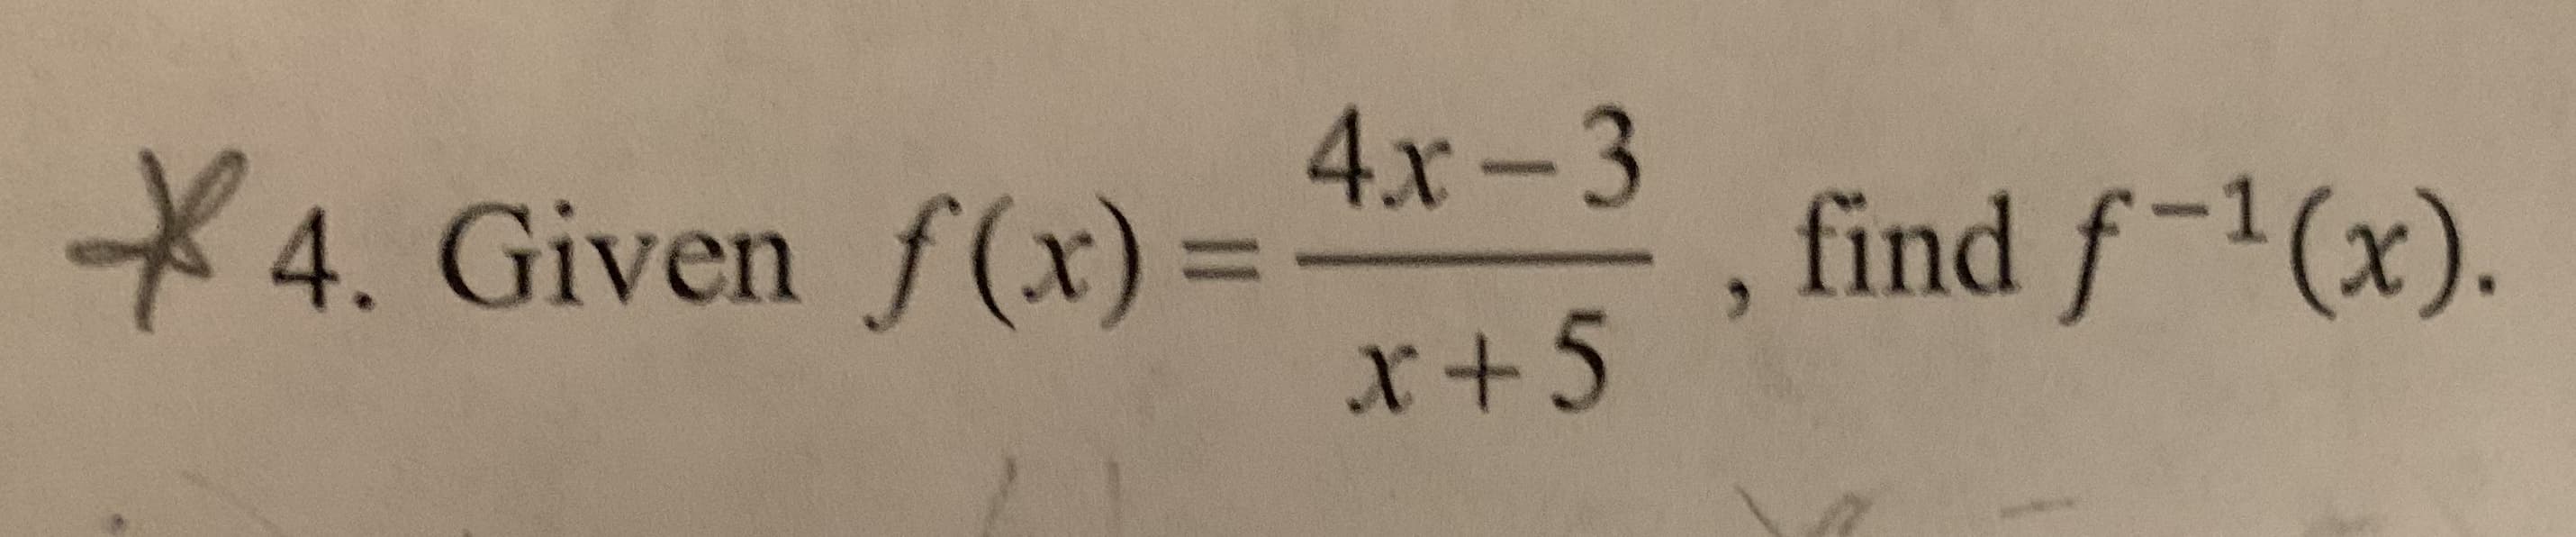 4x
.x
, find f-1 (x).
4. Given f(x)=
x+5
